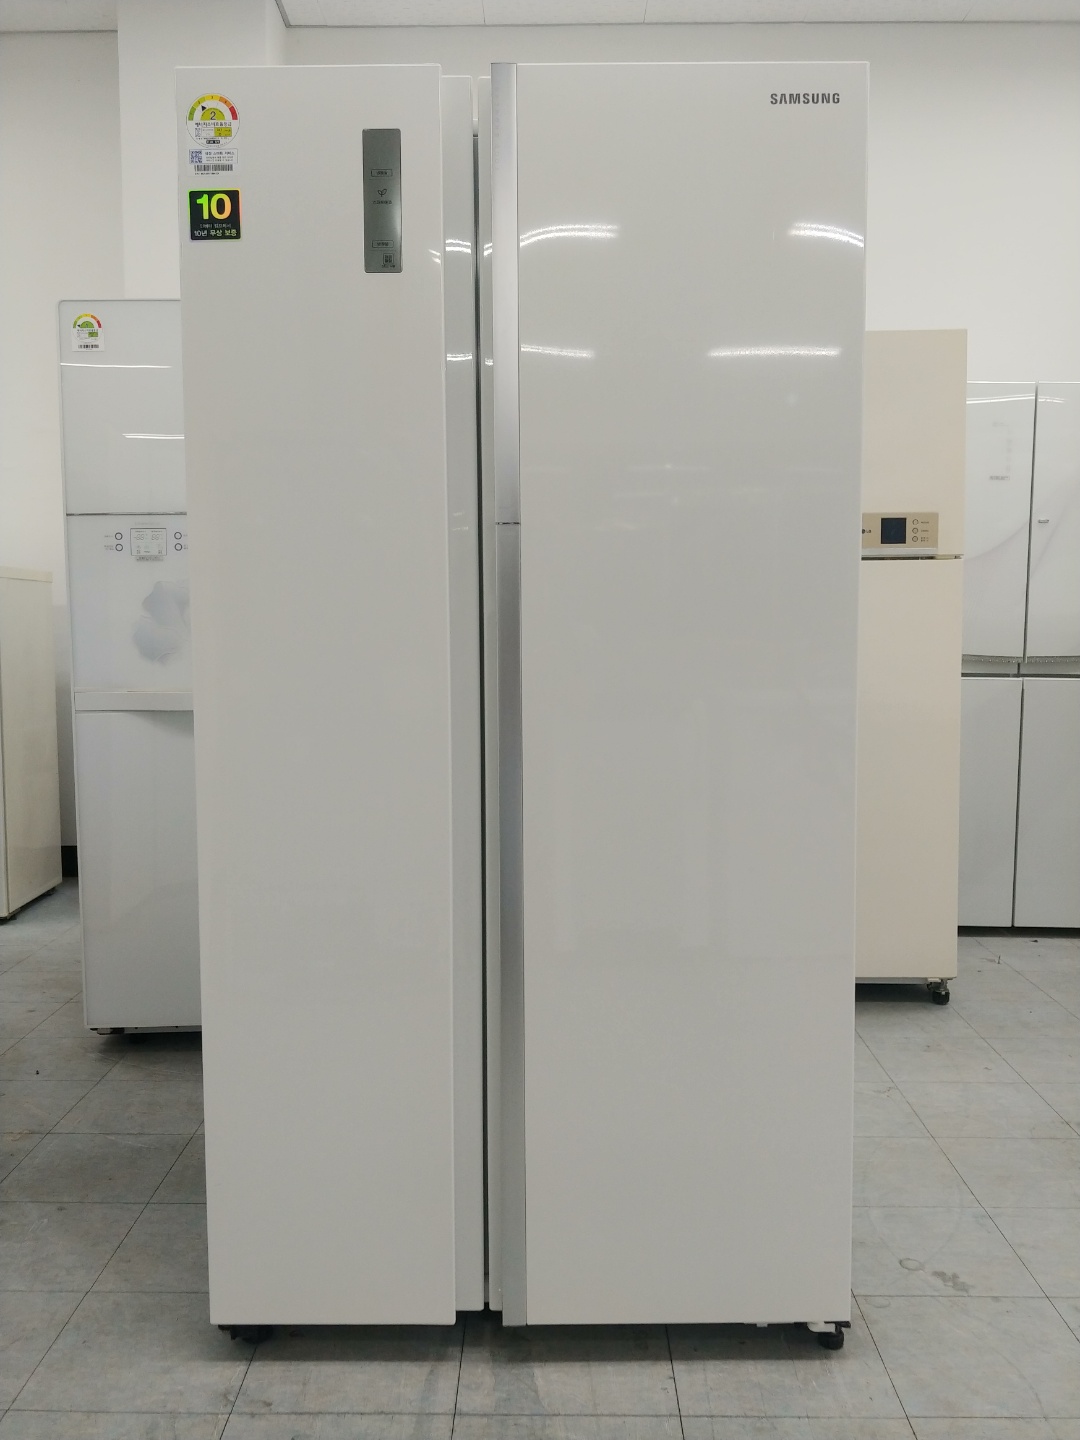 중고냉장고 양문형 삼성전자 지펠 푸드쇼케이스 냉장고 831리터 2014년 하남 092904